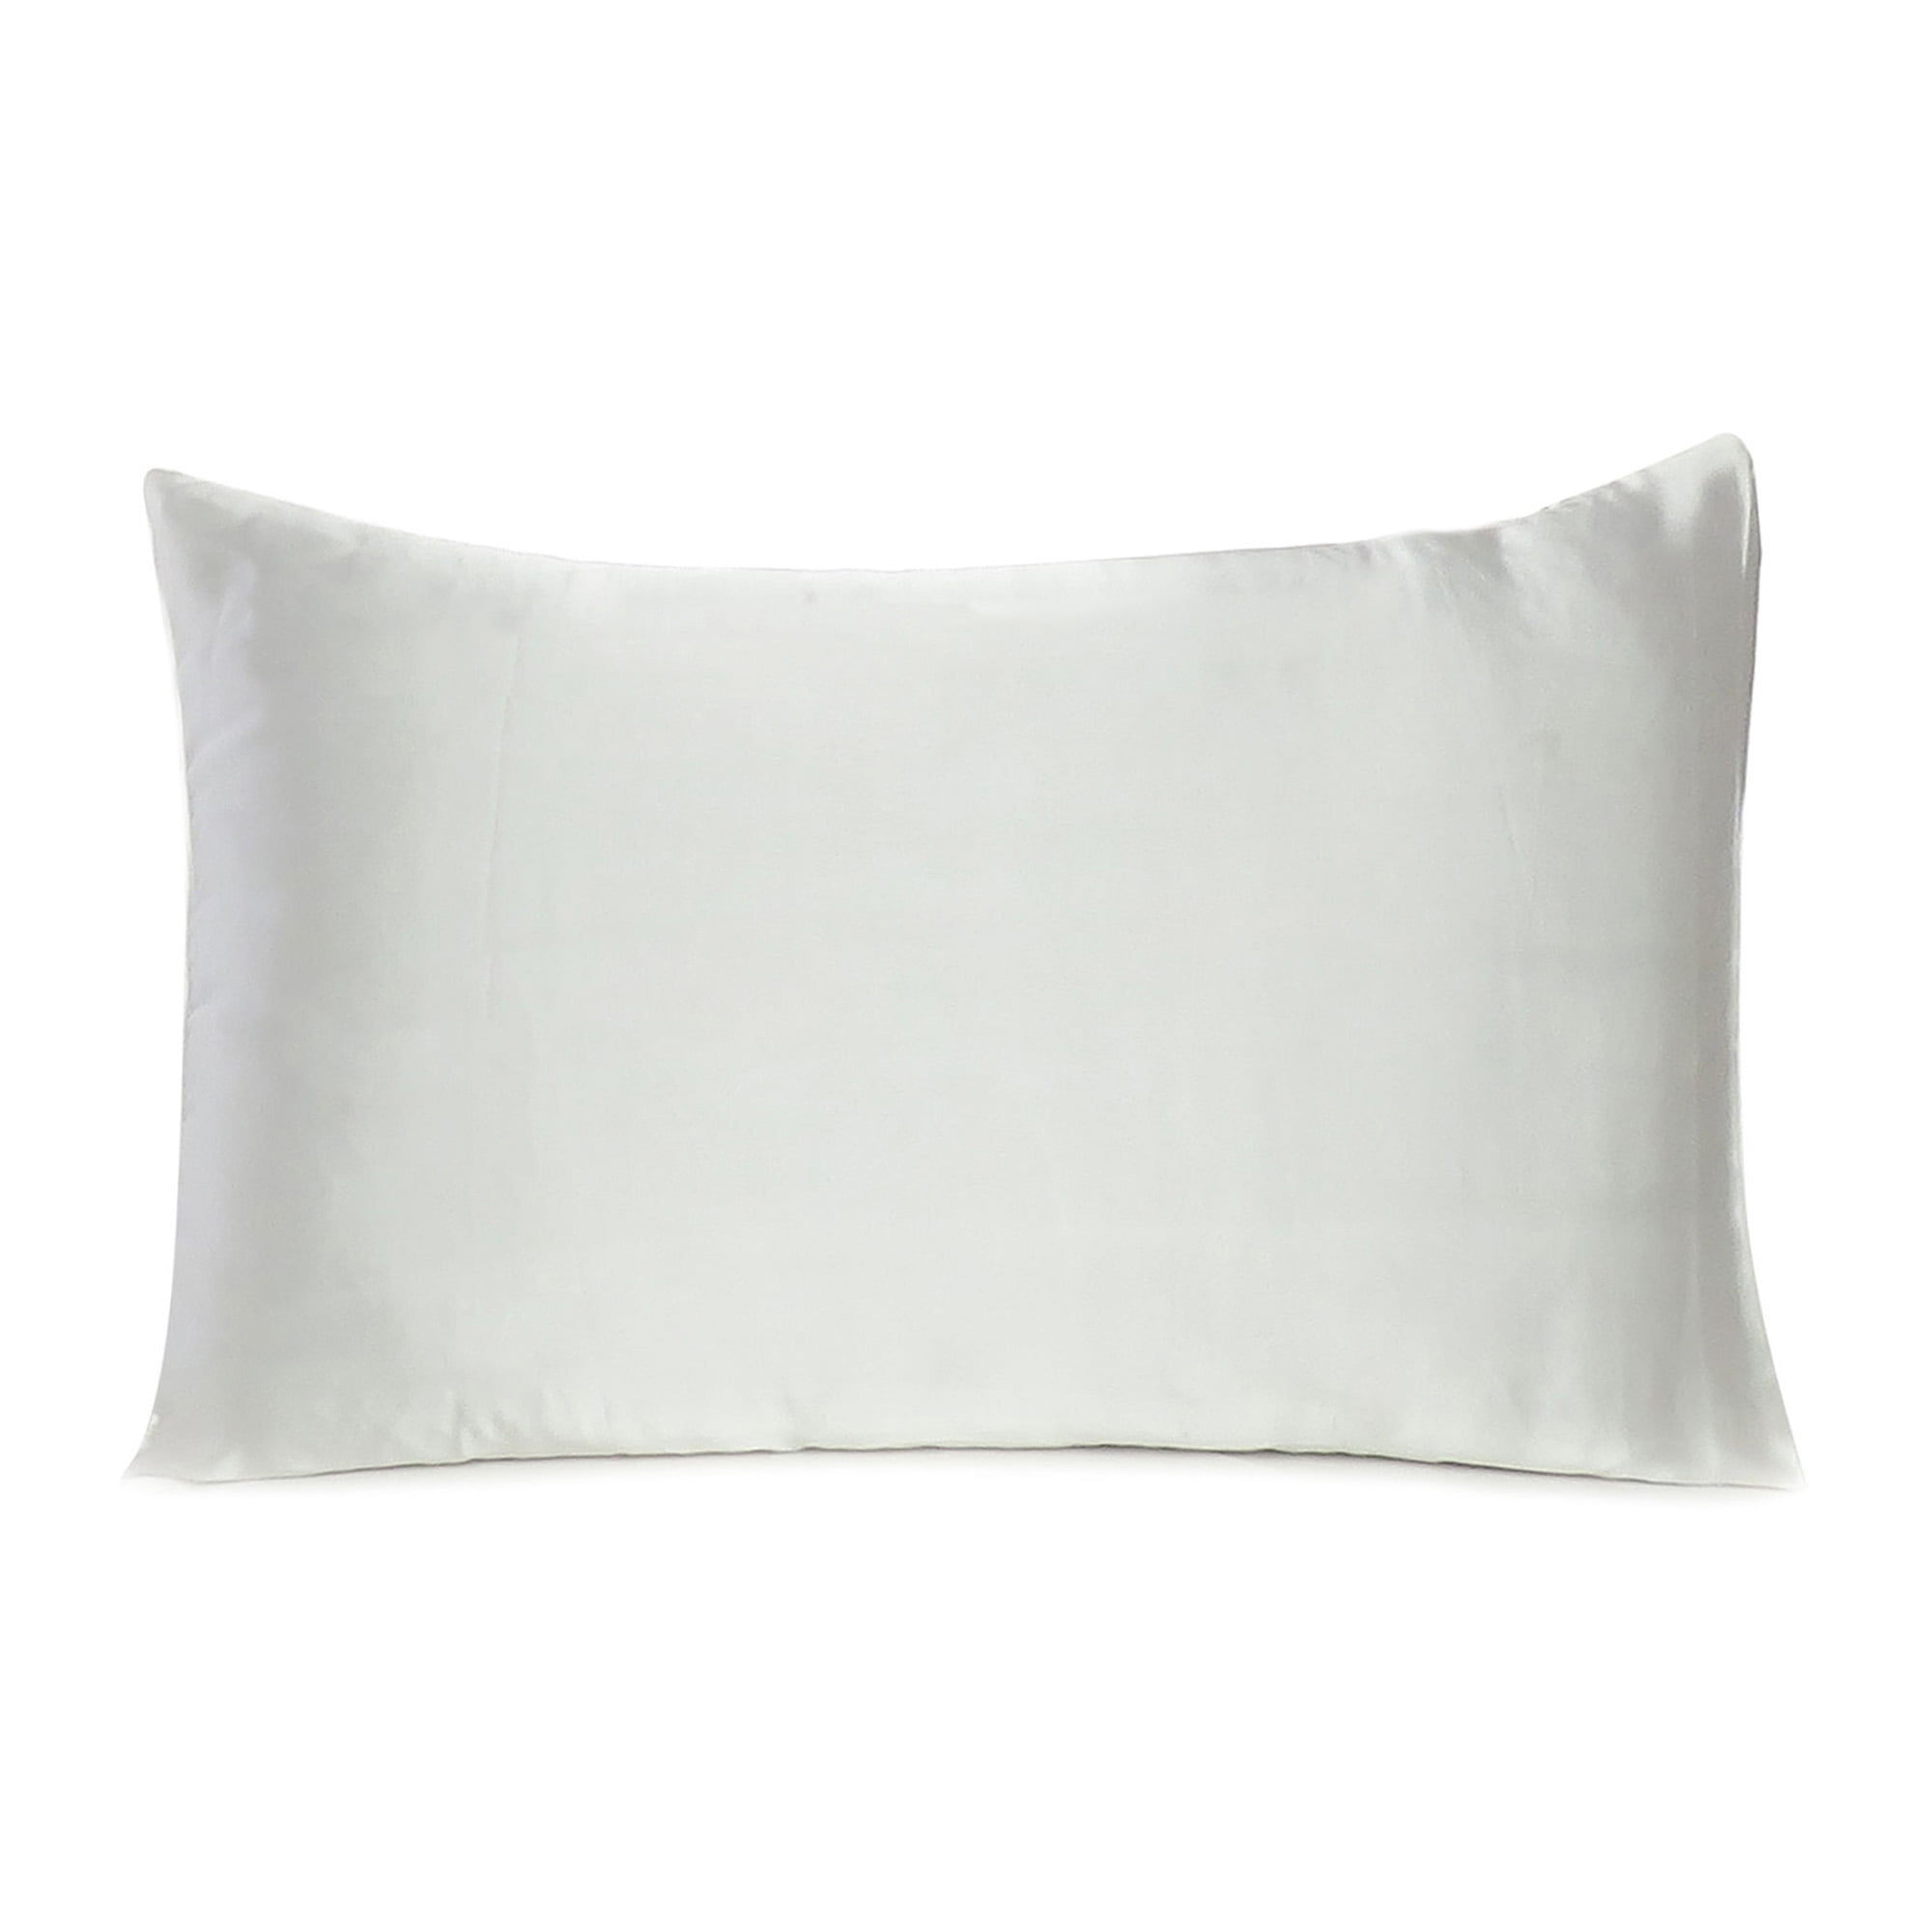 Bevestiging Thuisland Zich voorstellen Oussum Satin Pillow Case Standard Pillowcases King Queen Bed Size Pillows  for Hair Skin Online, 1 Piece - Walmart.com